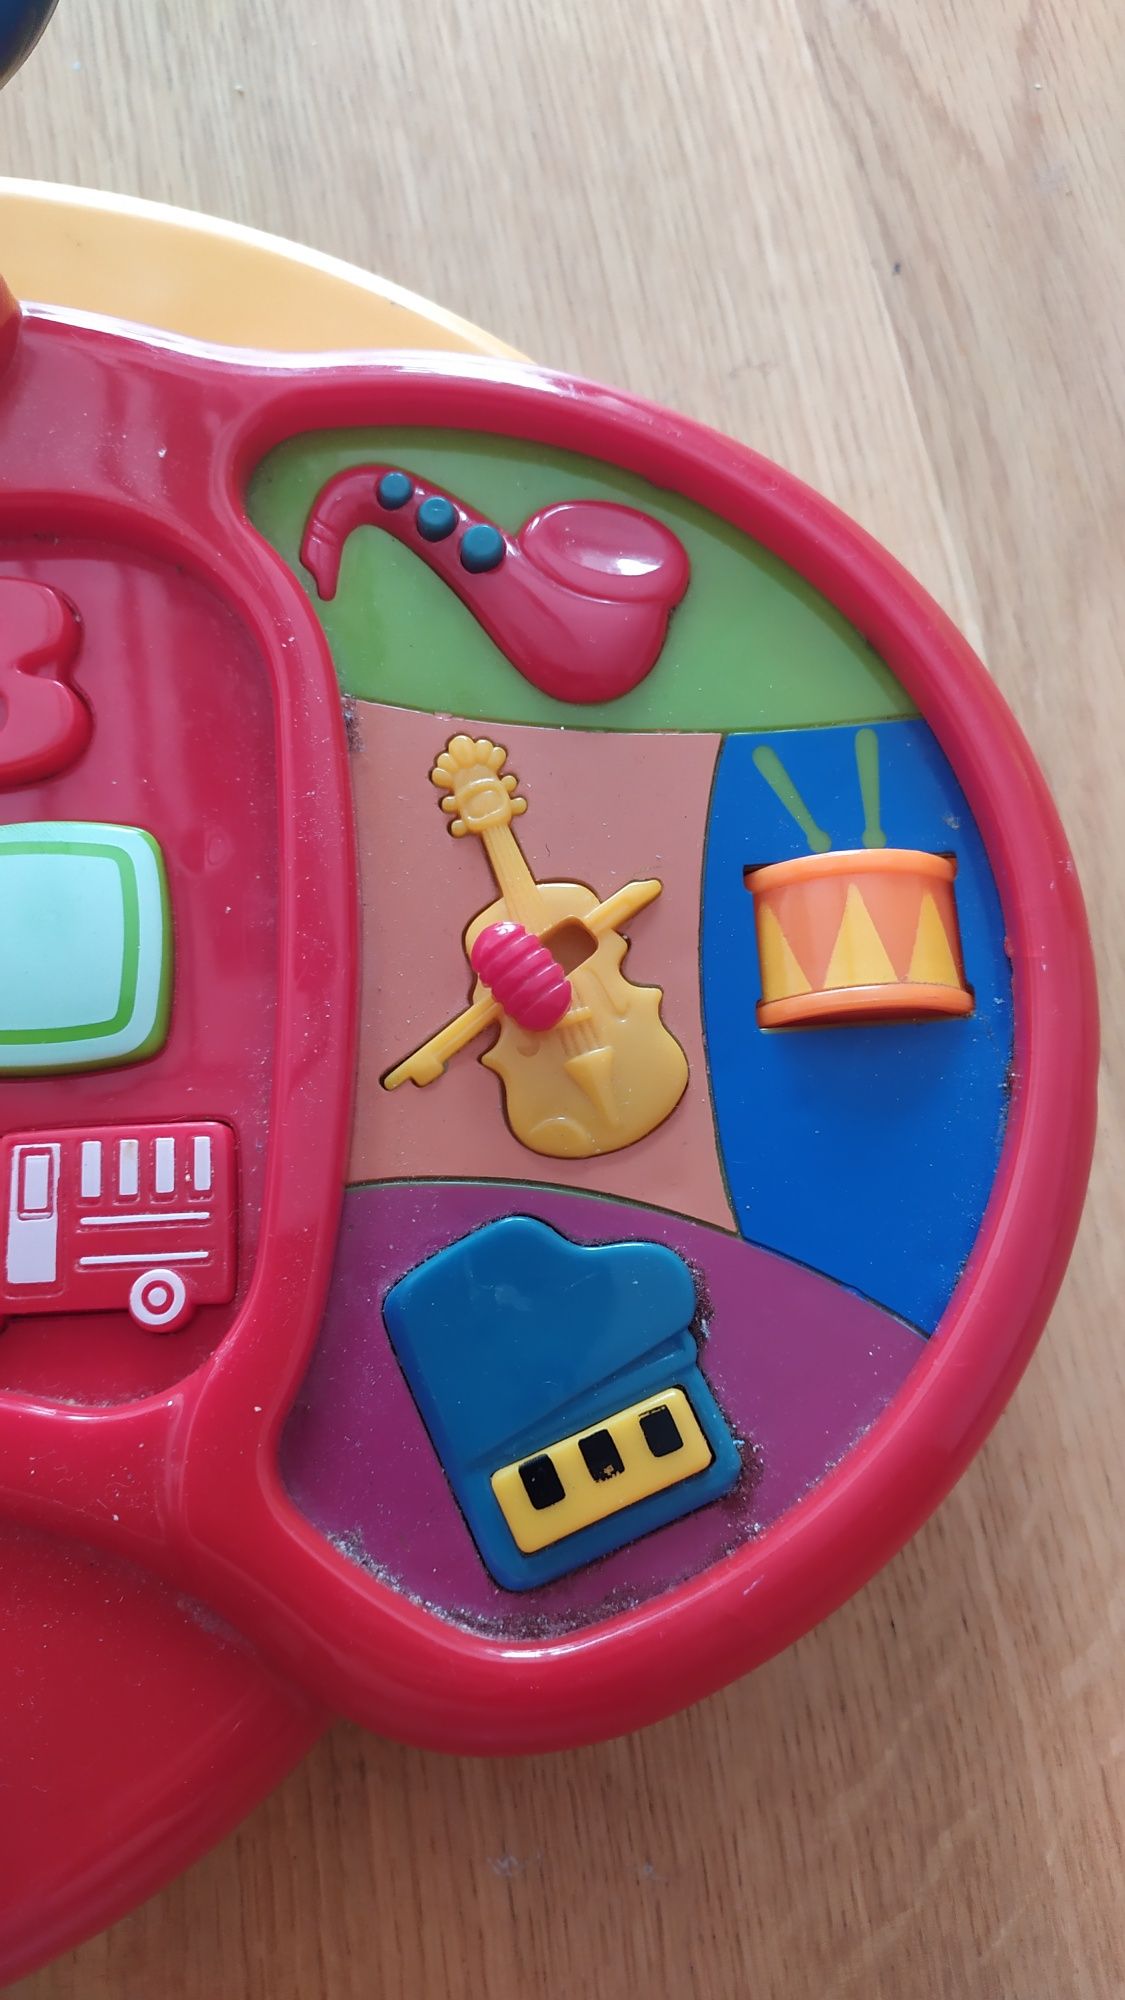 Zabawka elektroniczna dla dziecka